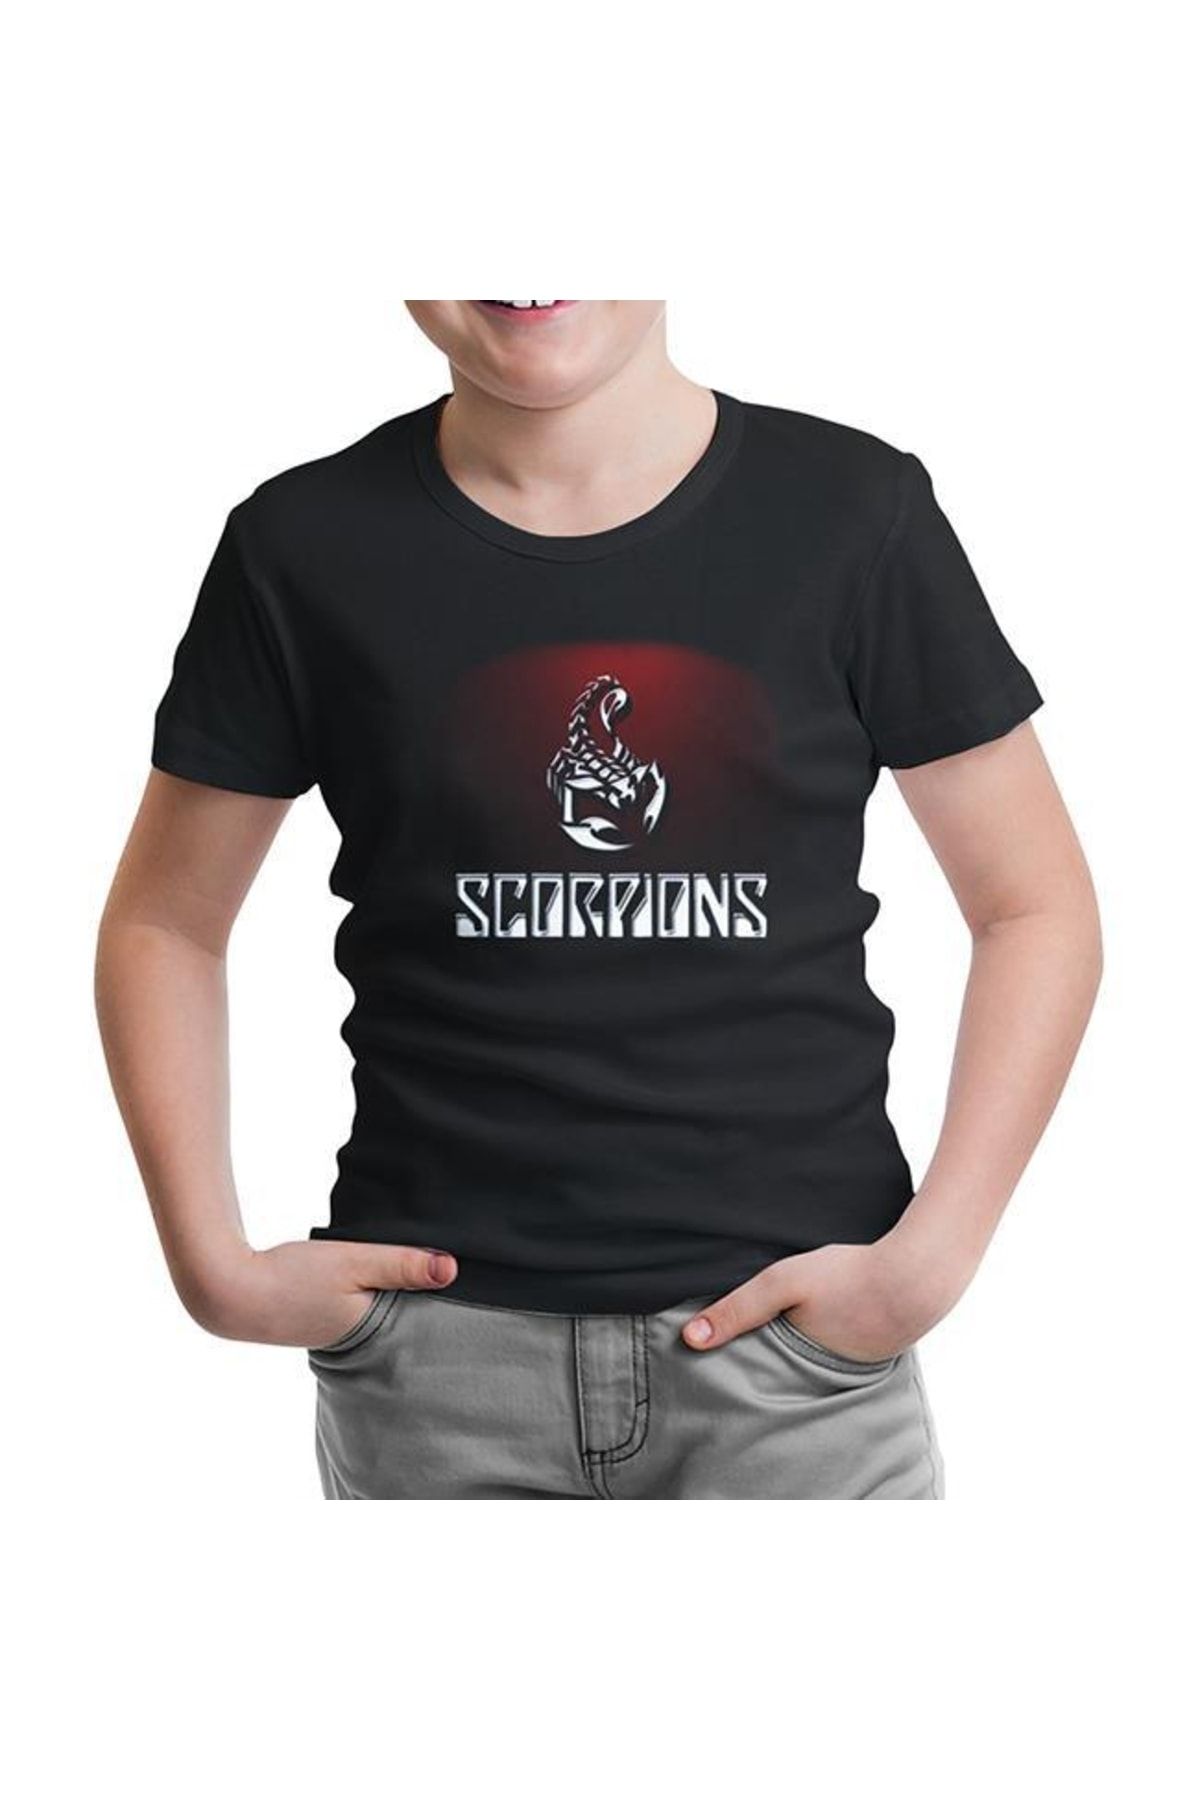 Lord T-Shirt Scorpions - Red Poison Siyah Çocuk Tshirt - cs-876